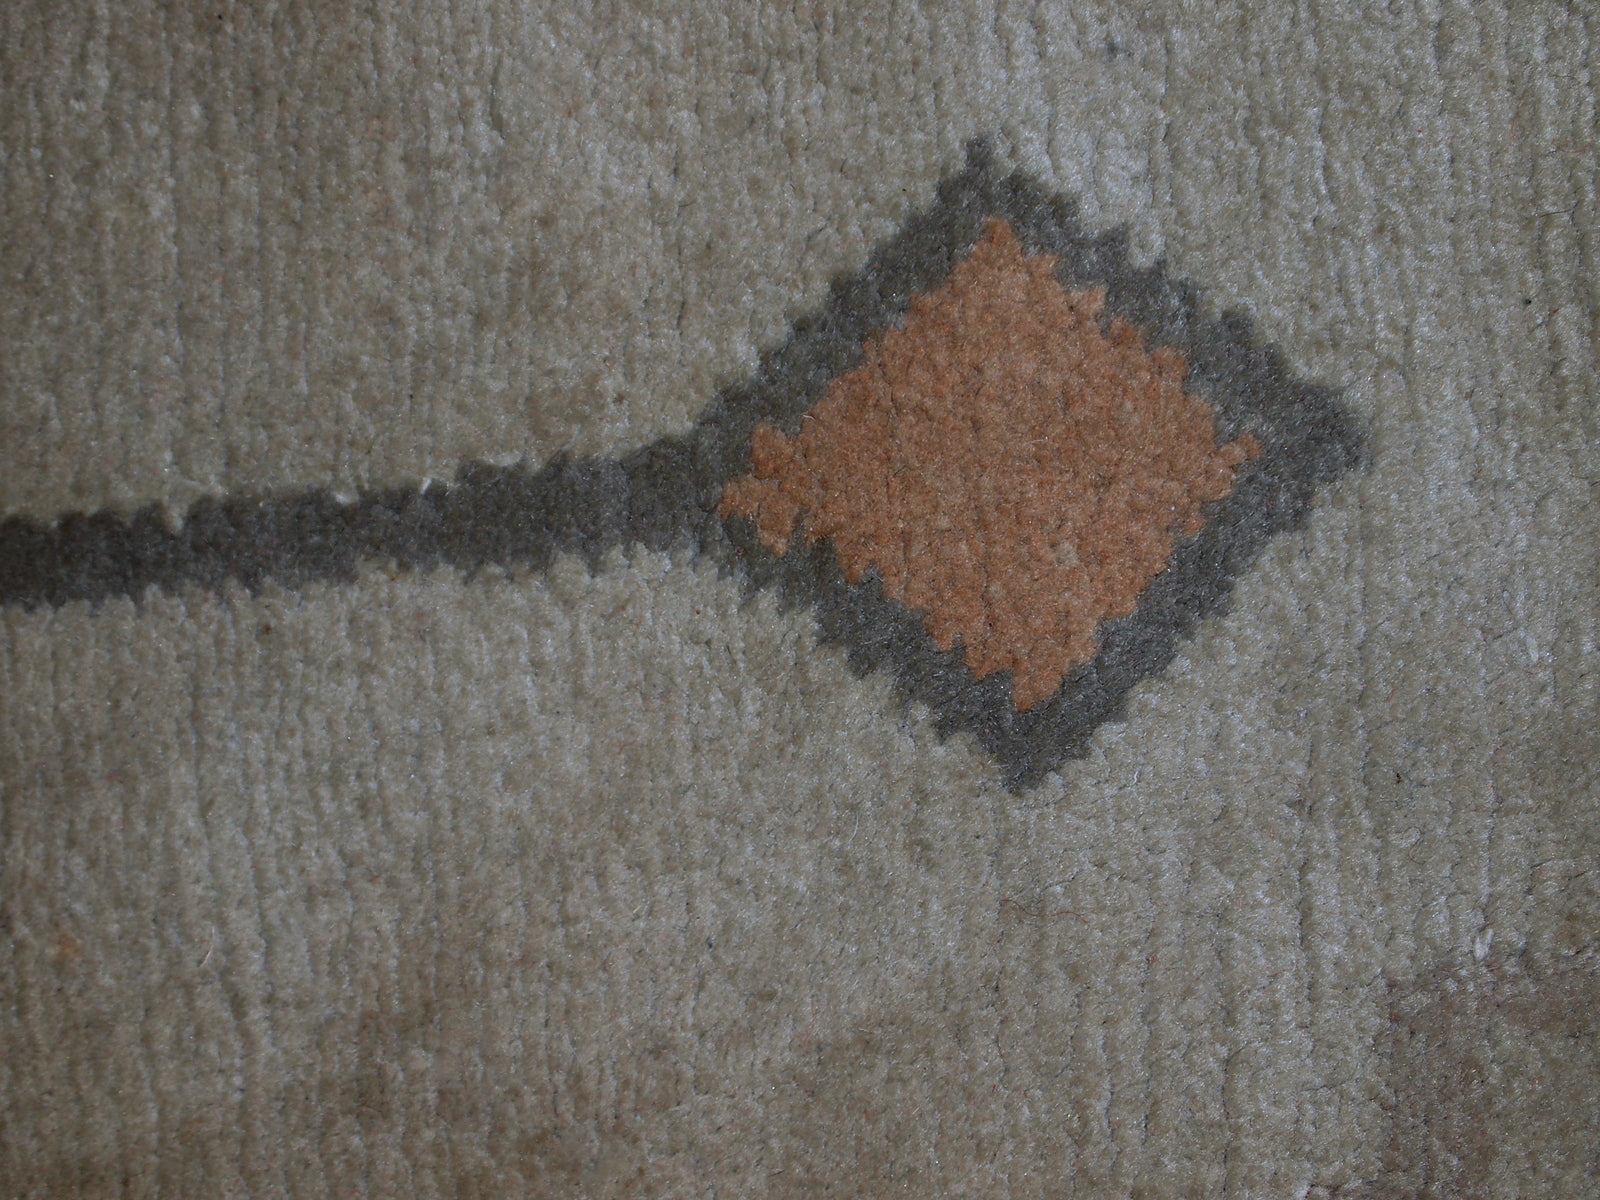 Handmade vintage Tibetan Khaden rug, 1960s